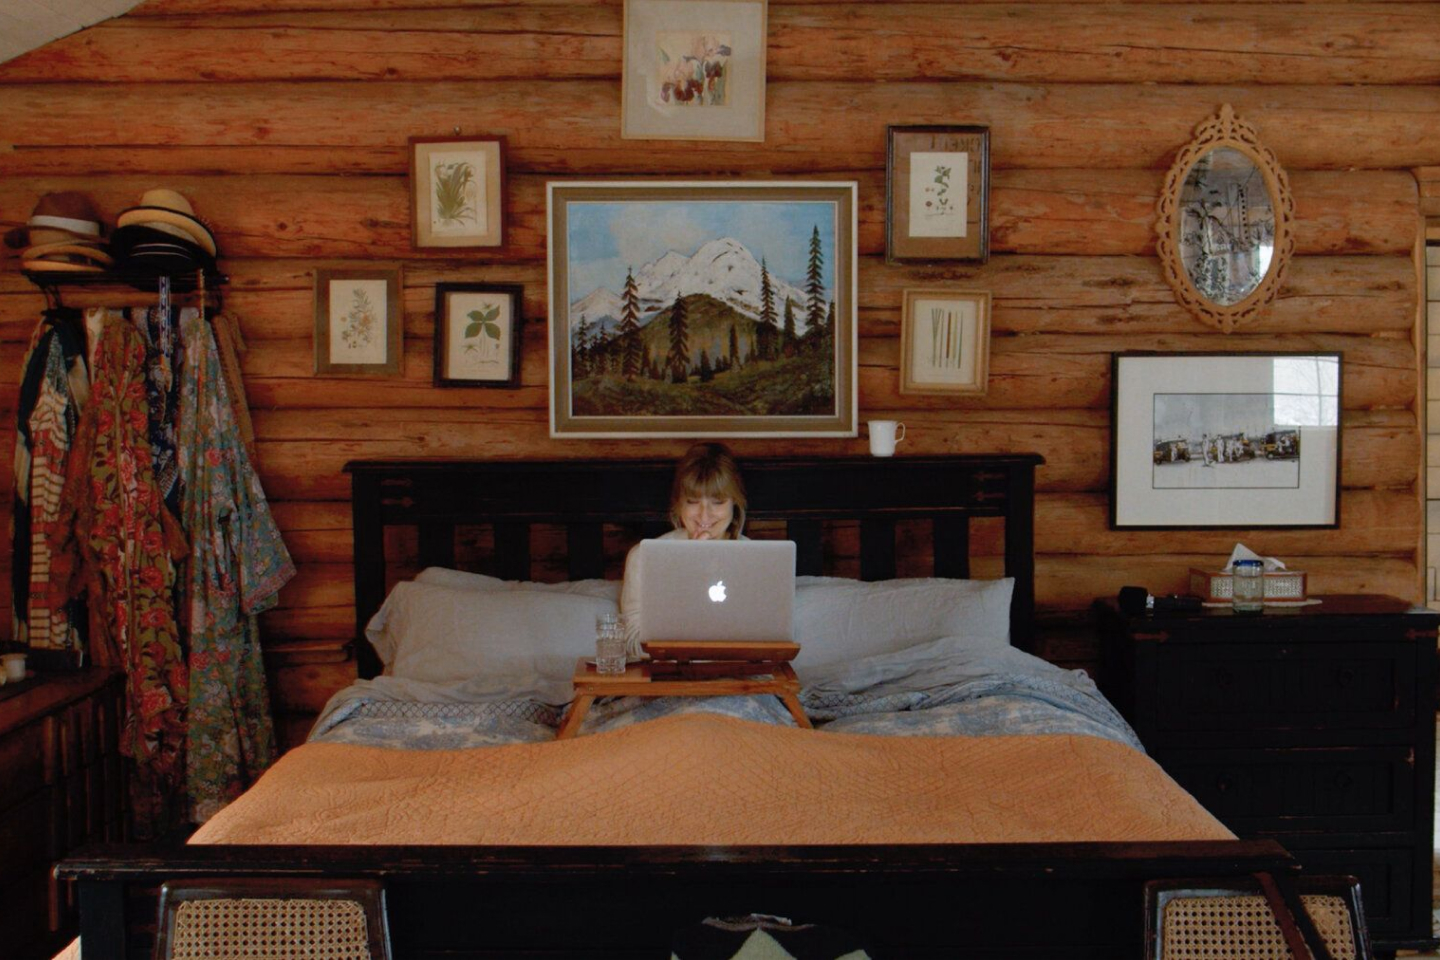 Una persona trabajando en una MacBook mientras está en la cama en una habitación con paneles de madera.